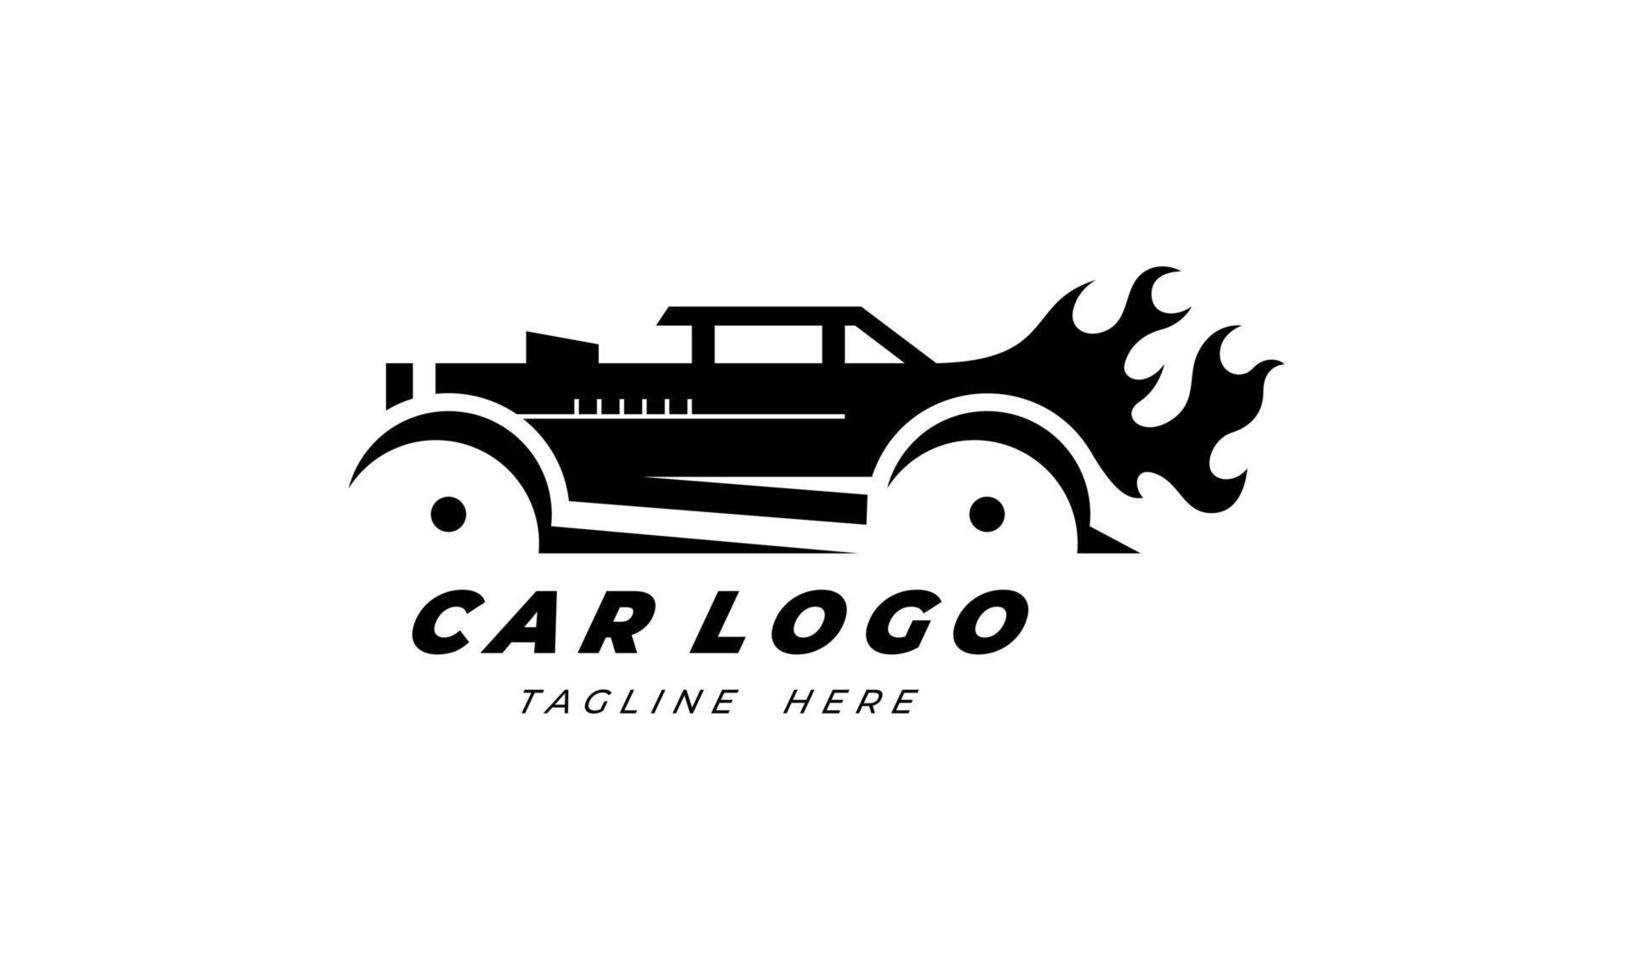 logotipo muscular. servicio de reparación de automóviles, restauración de automóviles y elementos de diseño de clubes de automóviles. vector